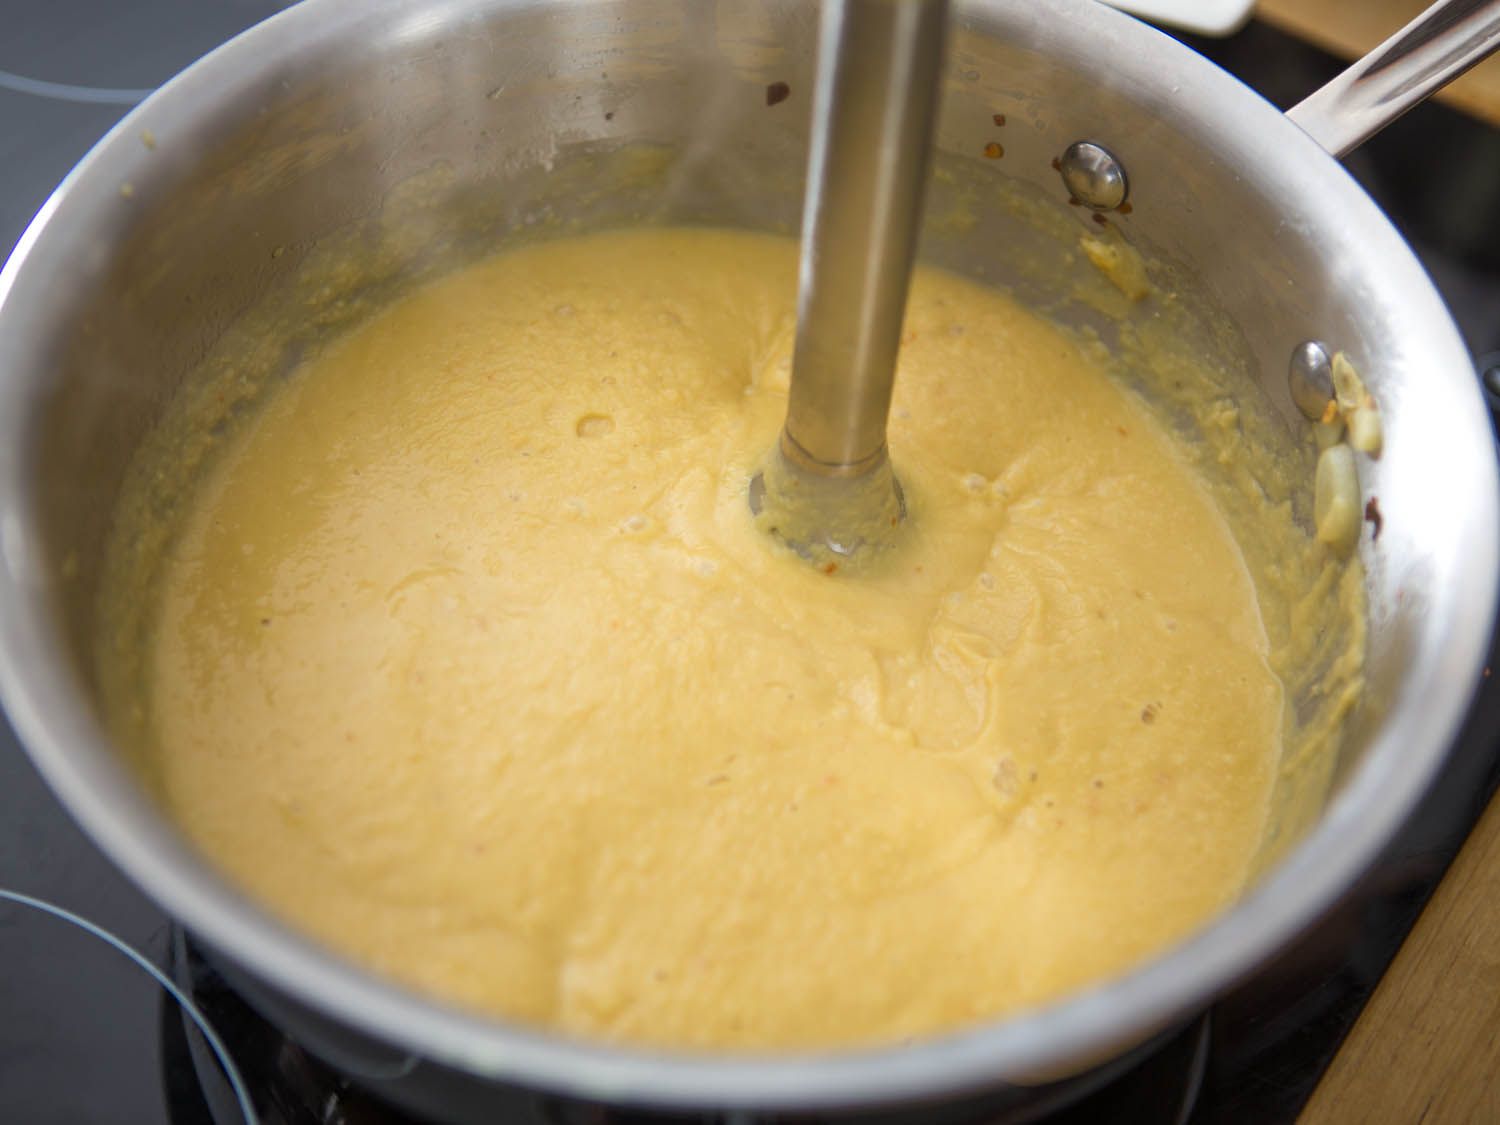 用浸入式搅拌机将鹰嘴豆放入锅中搅拌。